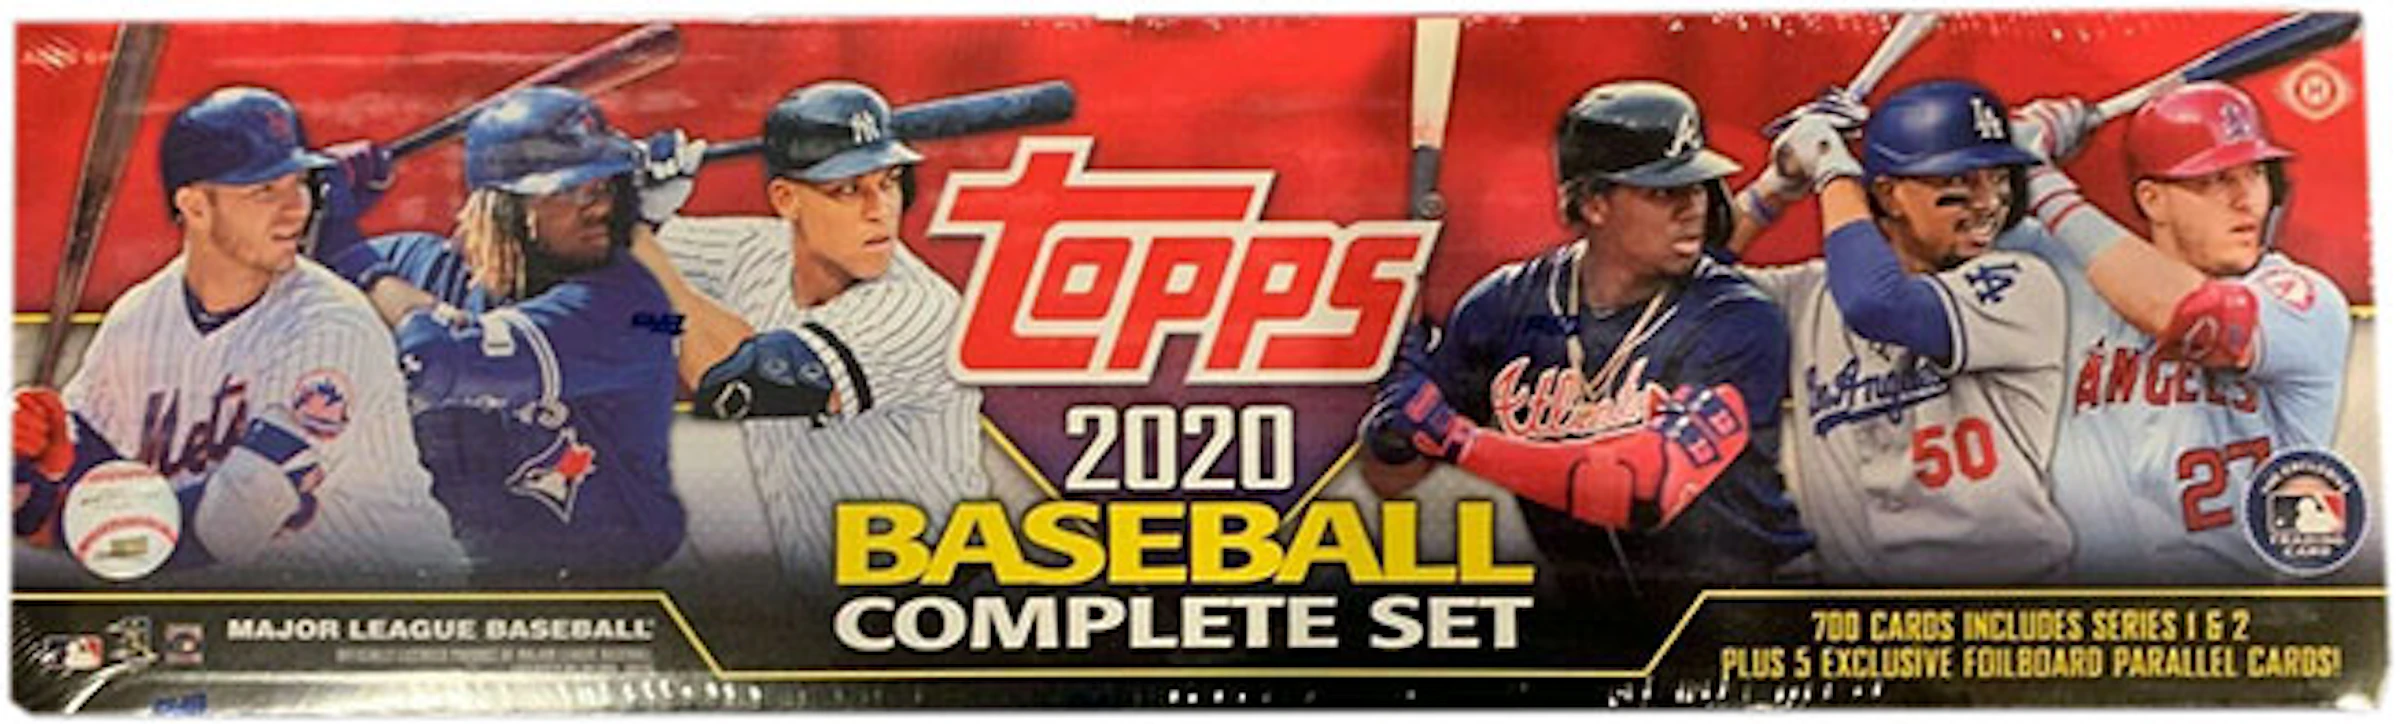 welvaart Regenboog Erfgenaam 2020 Topps Baseball Red Complete Factory Set - 2020 - US